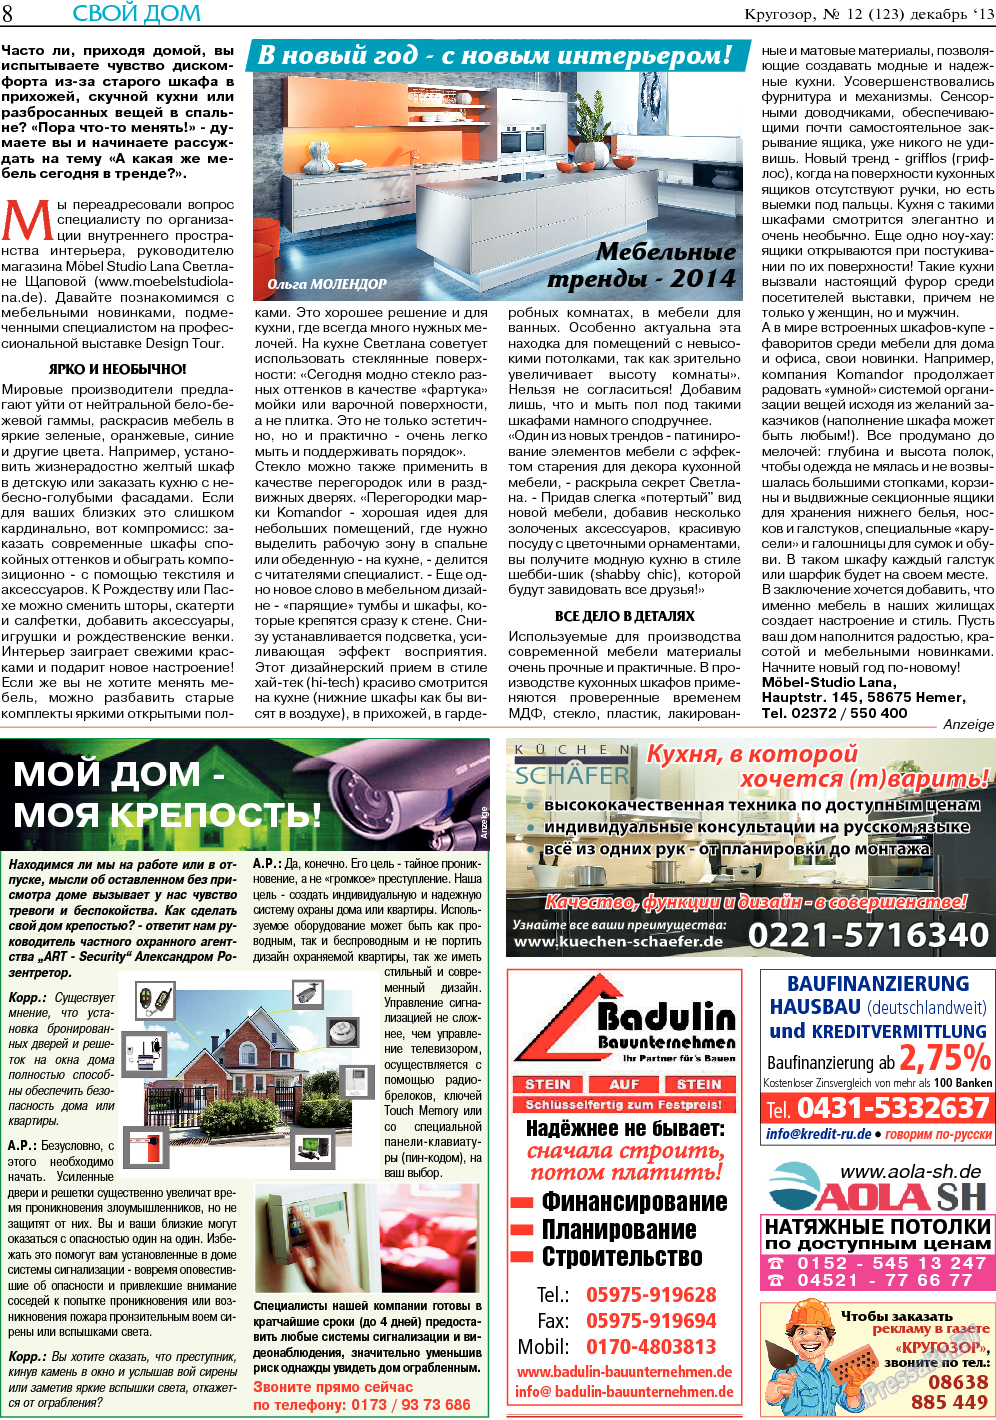 Кругозор, газета. 2013 №12 стр.8